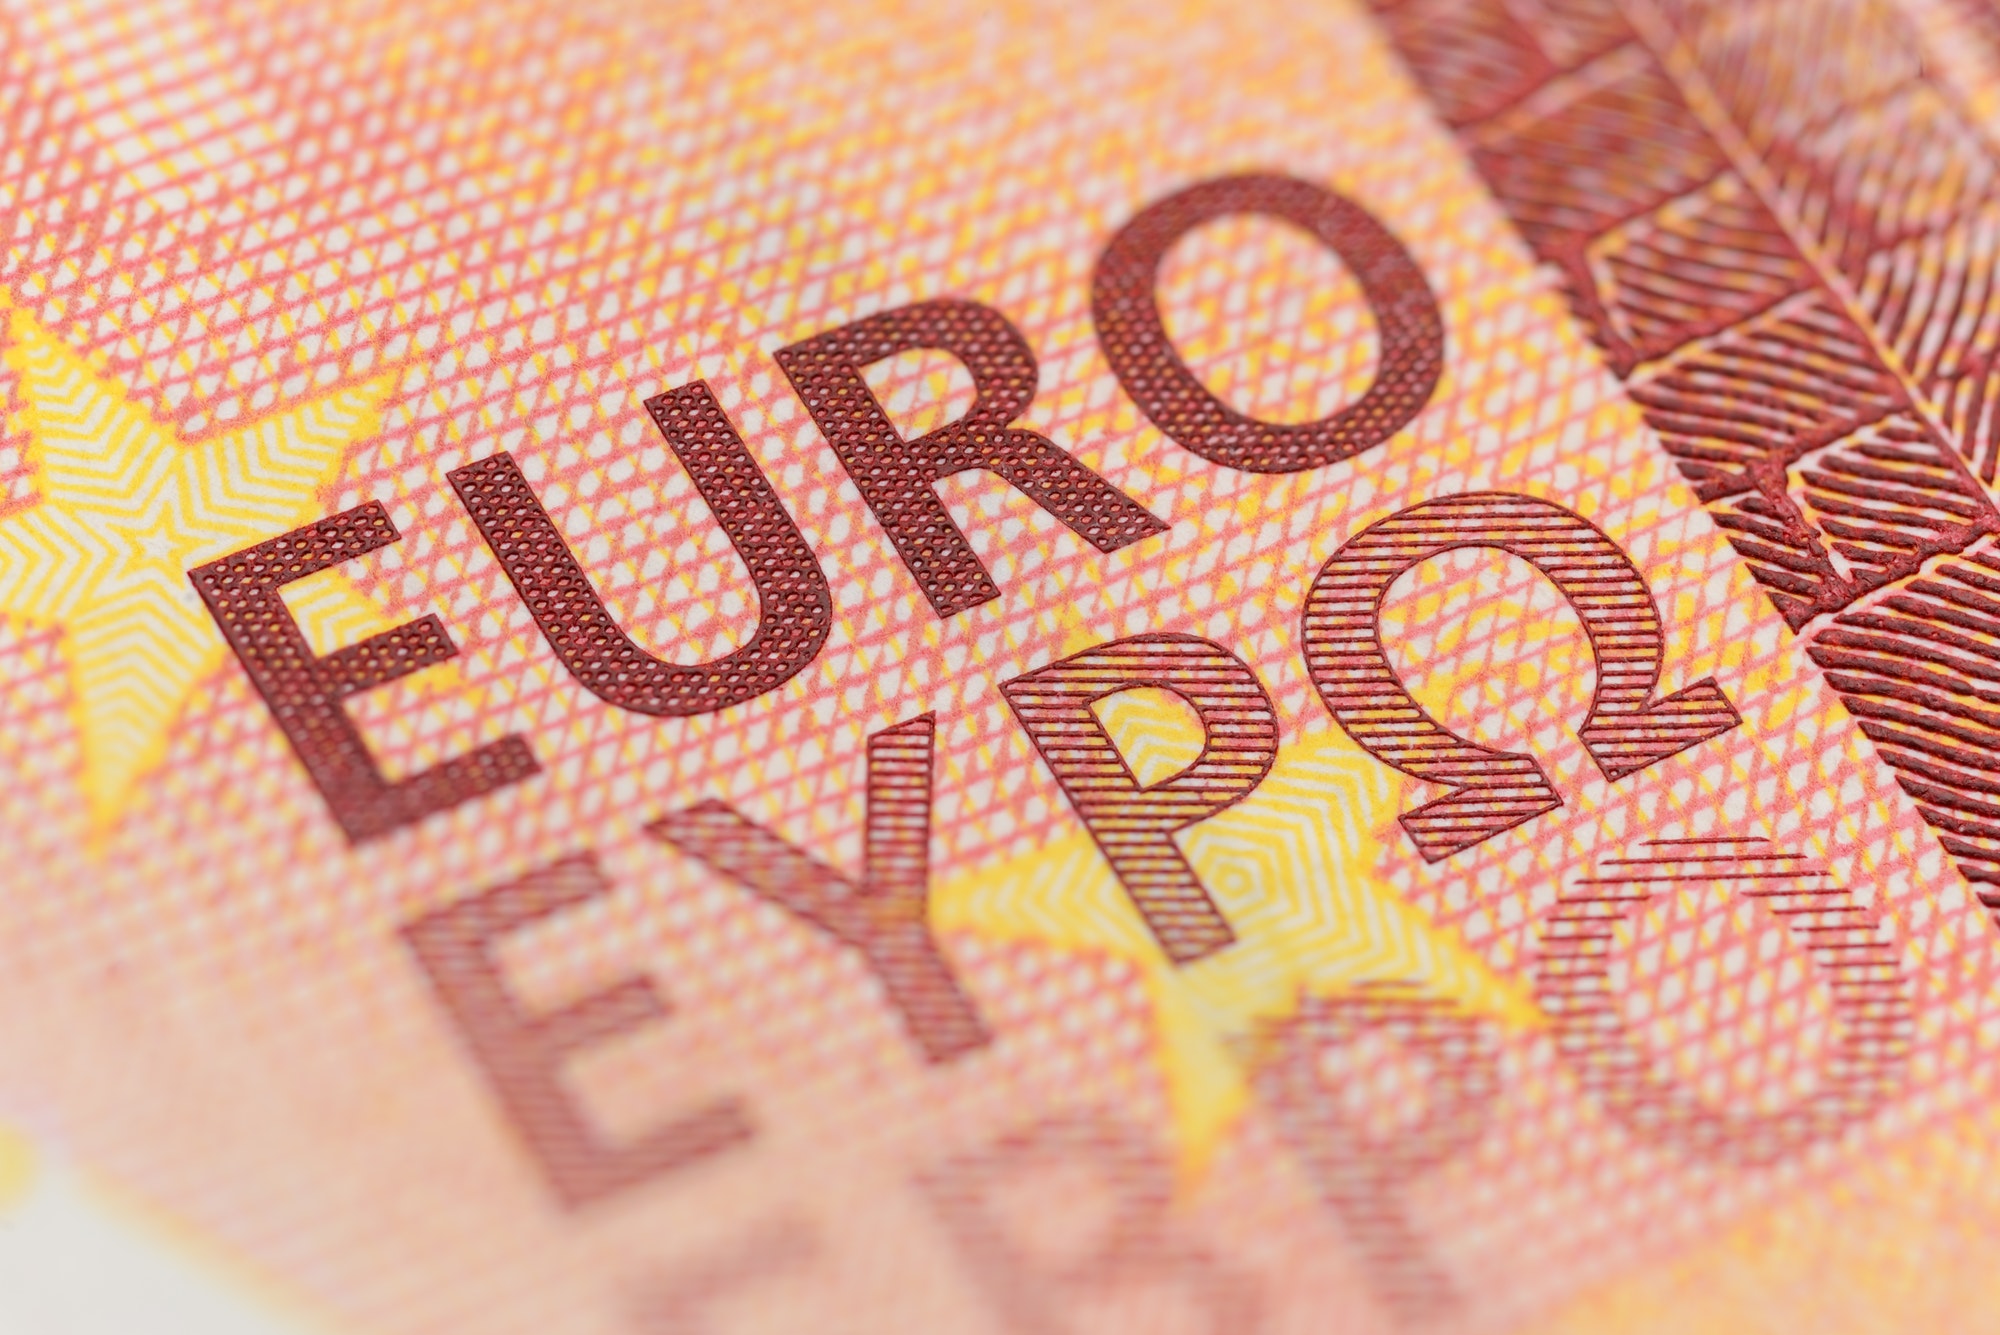 Euro currency macro shot